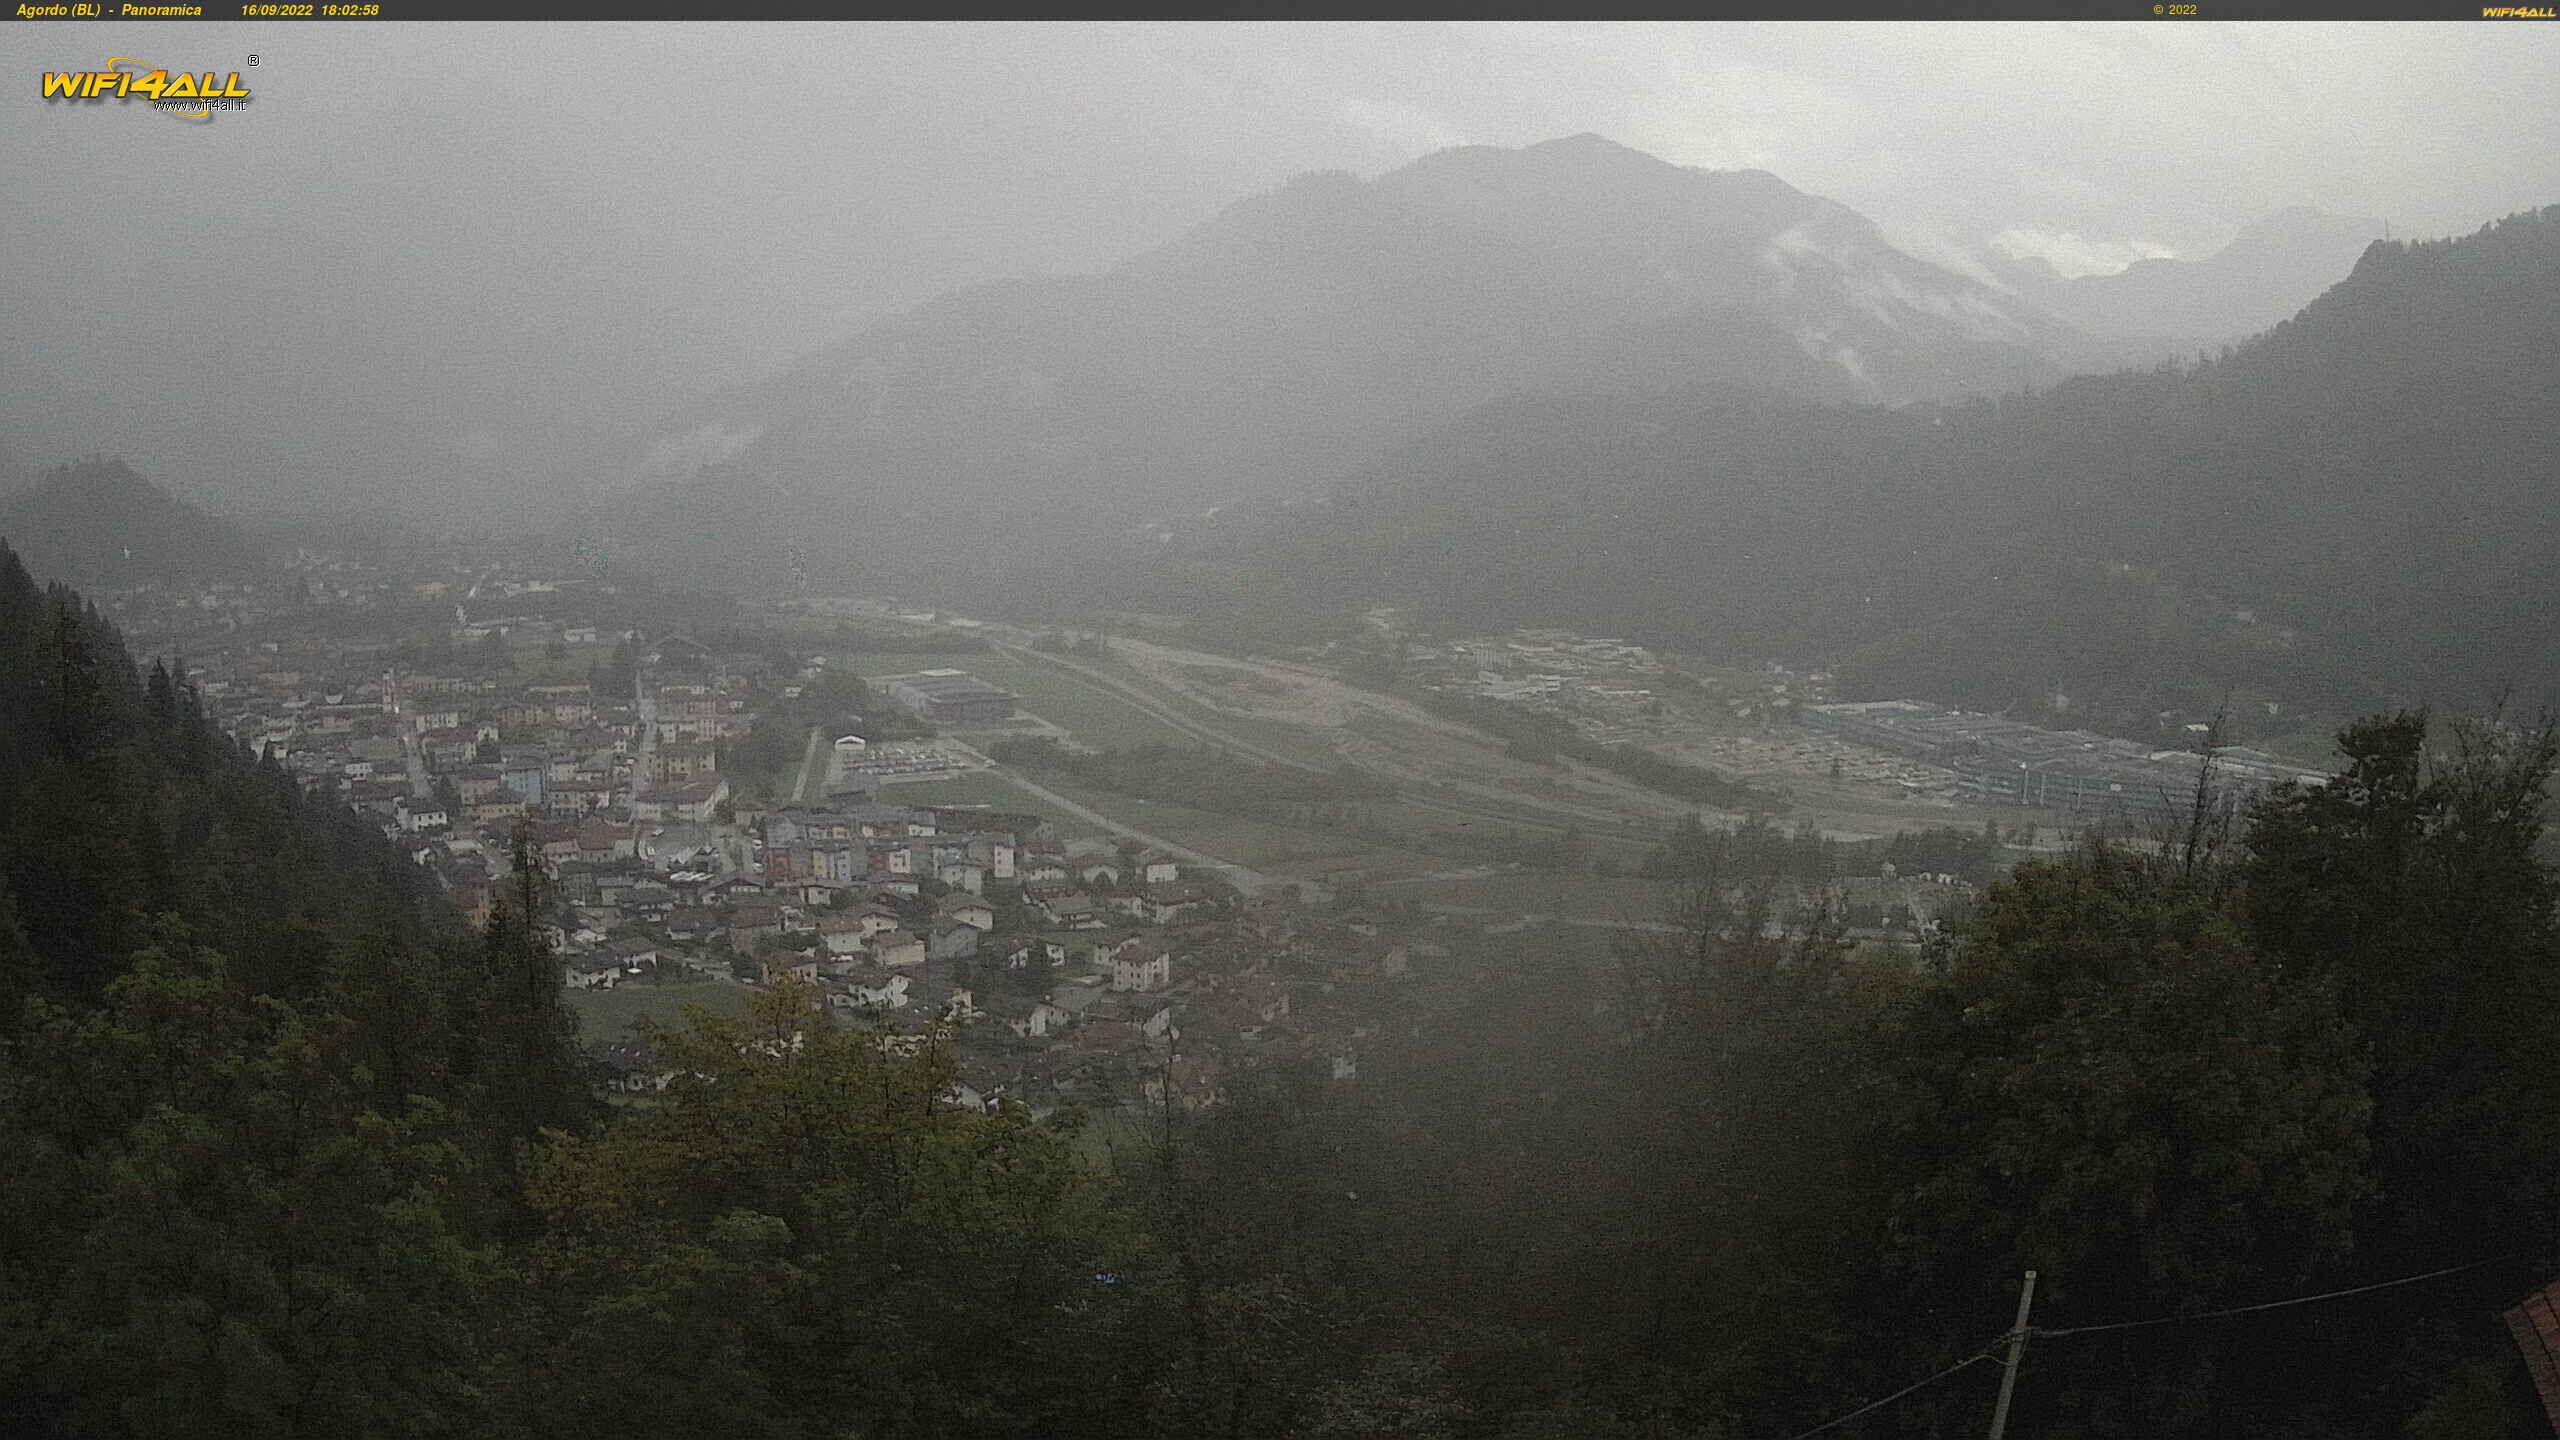 webcam Agordo,  webcam provincia di Belluno, 
                                            webcam Veneto, webcam alpi